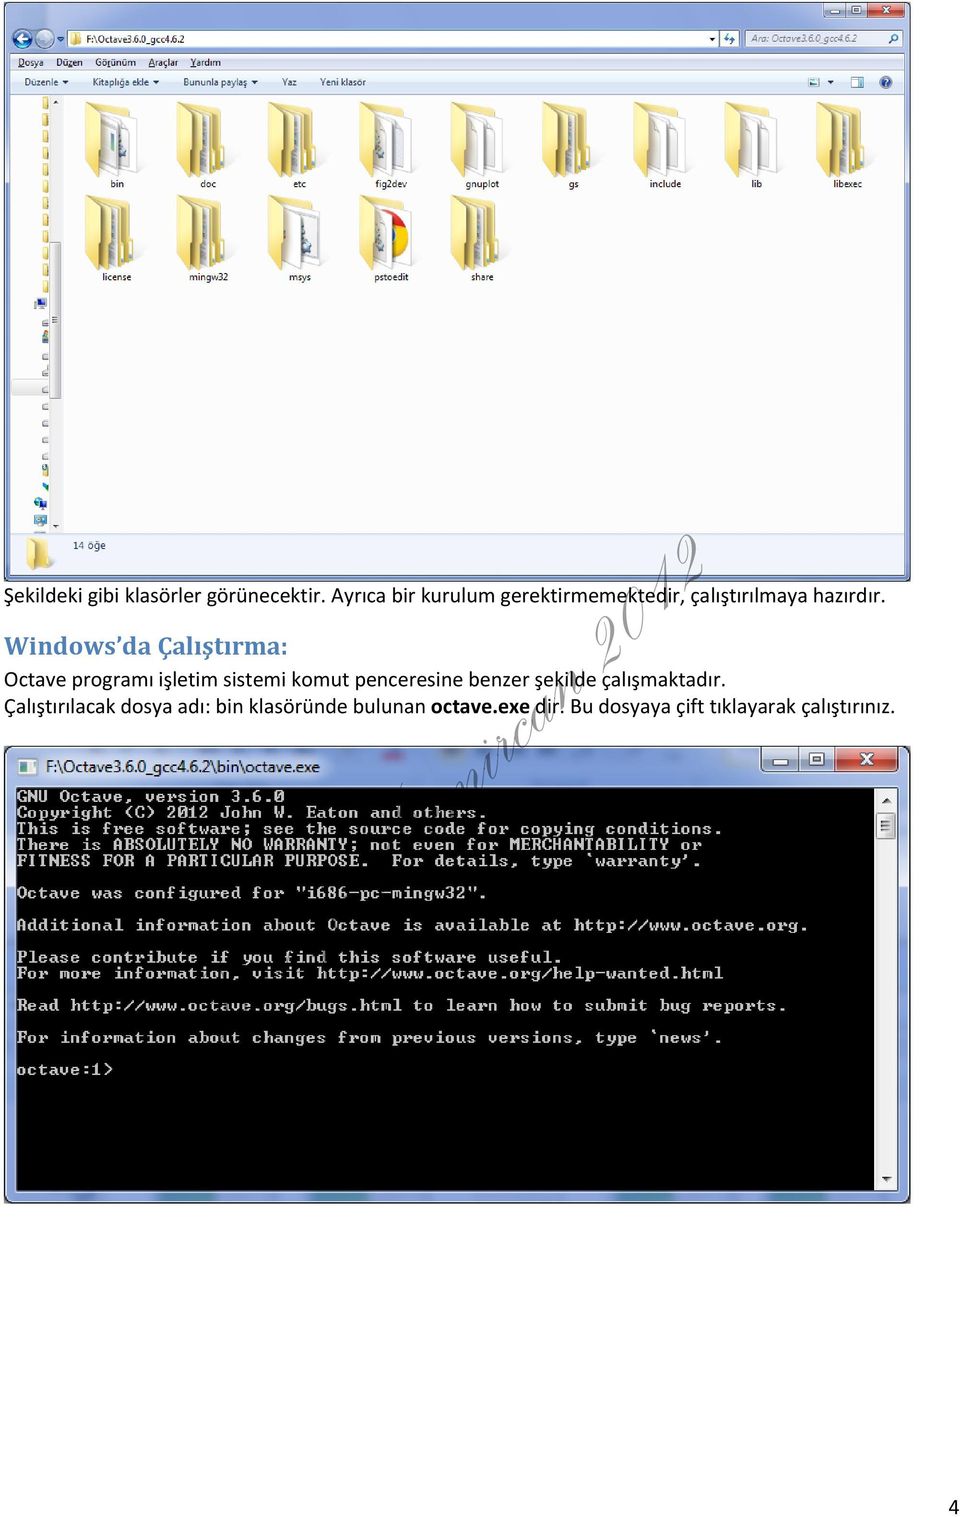 Windows da Çalıştırma: Octave programı işletim sistemi komut penceresine